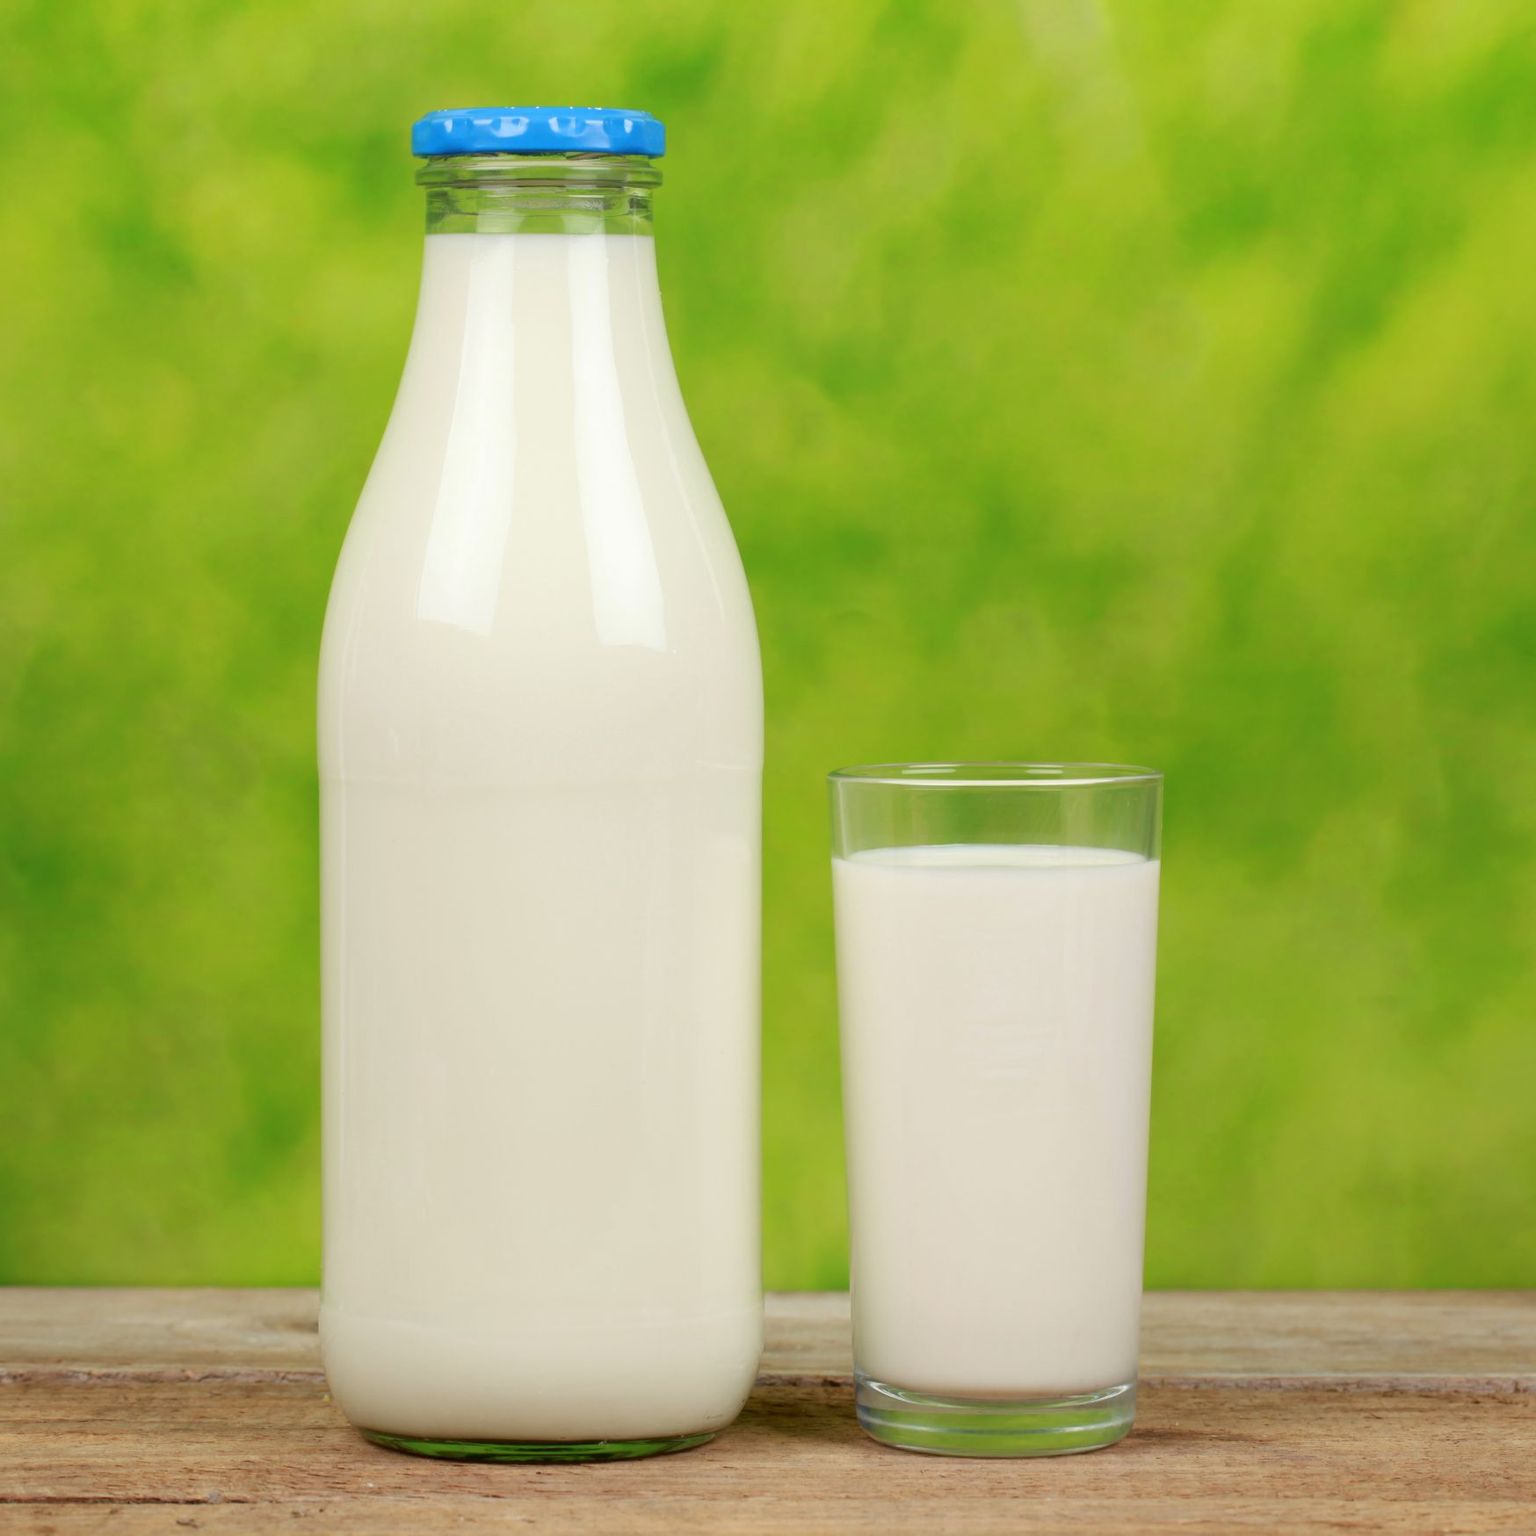 Piima laktoositalumatus ekorral juua ei saa.